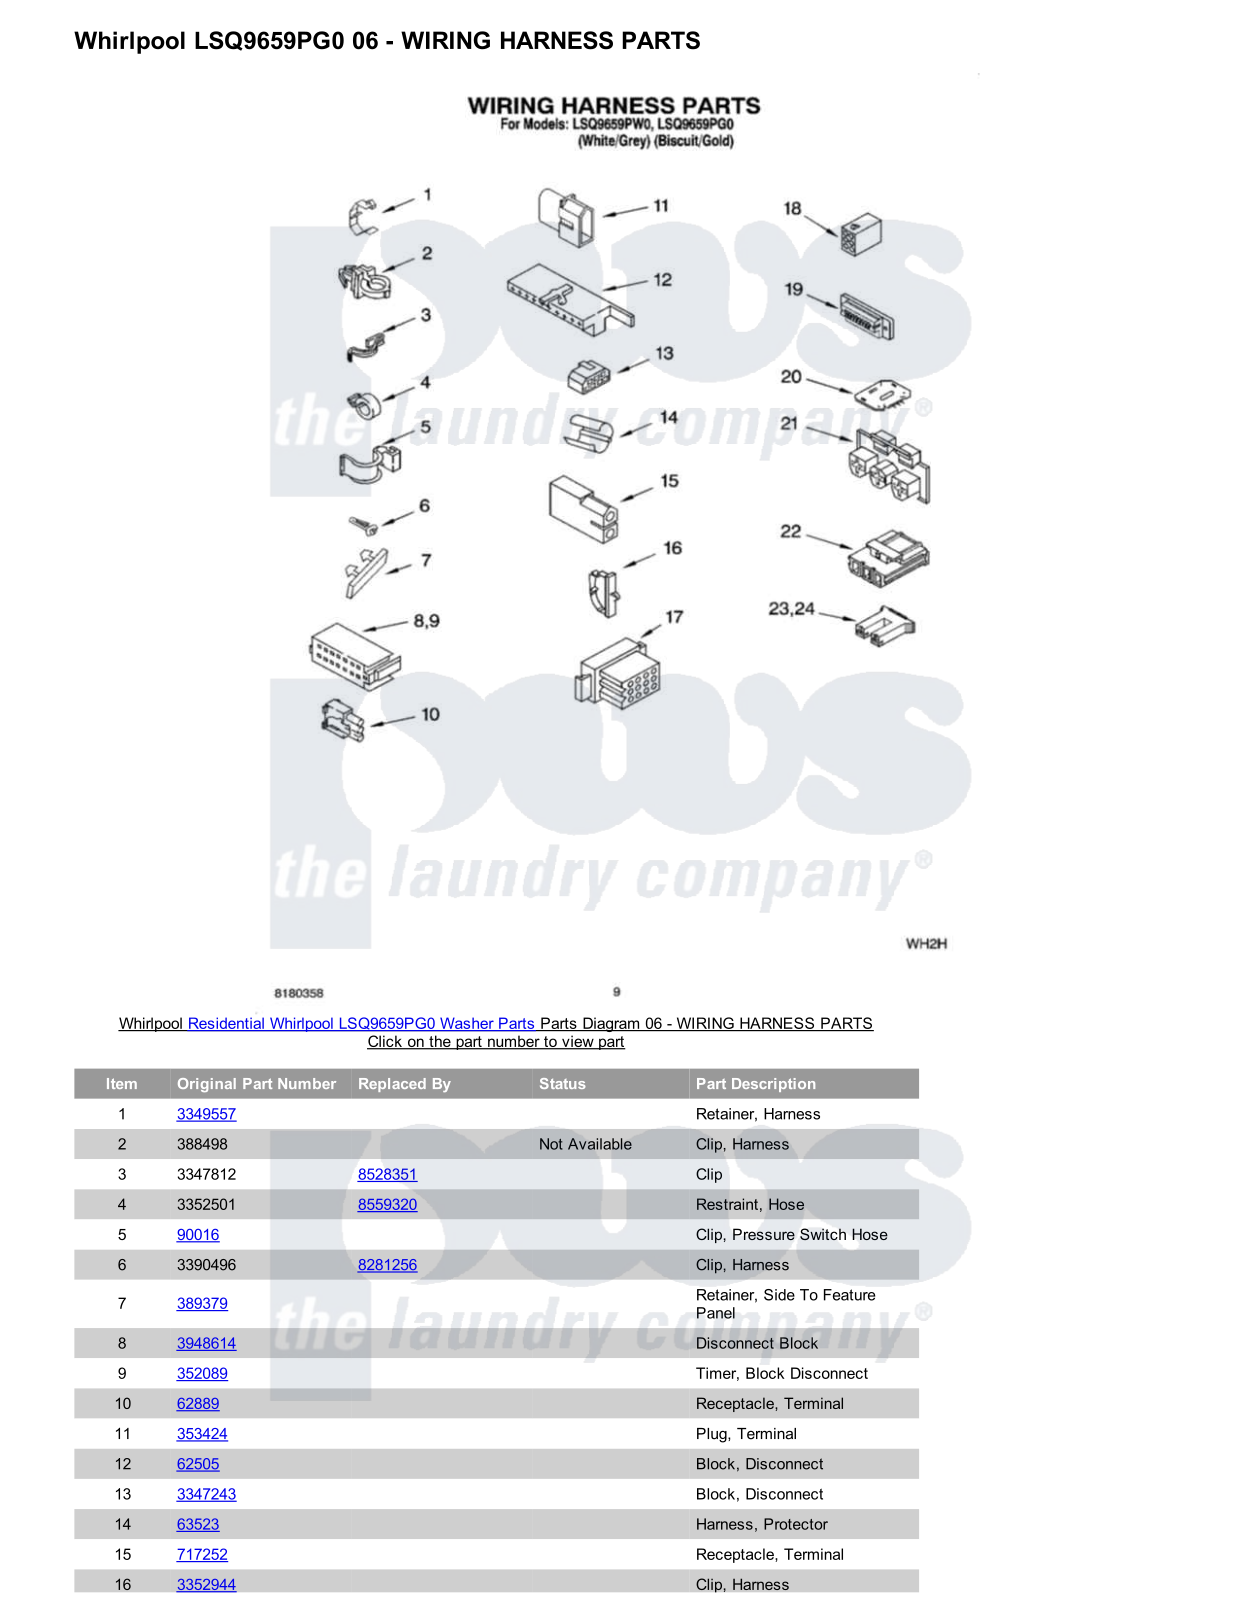 Whirlpool LSQ9659PG0 Parts Diagram